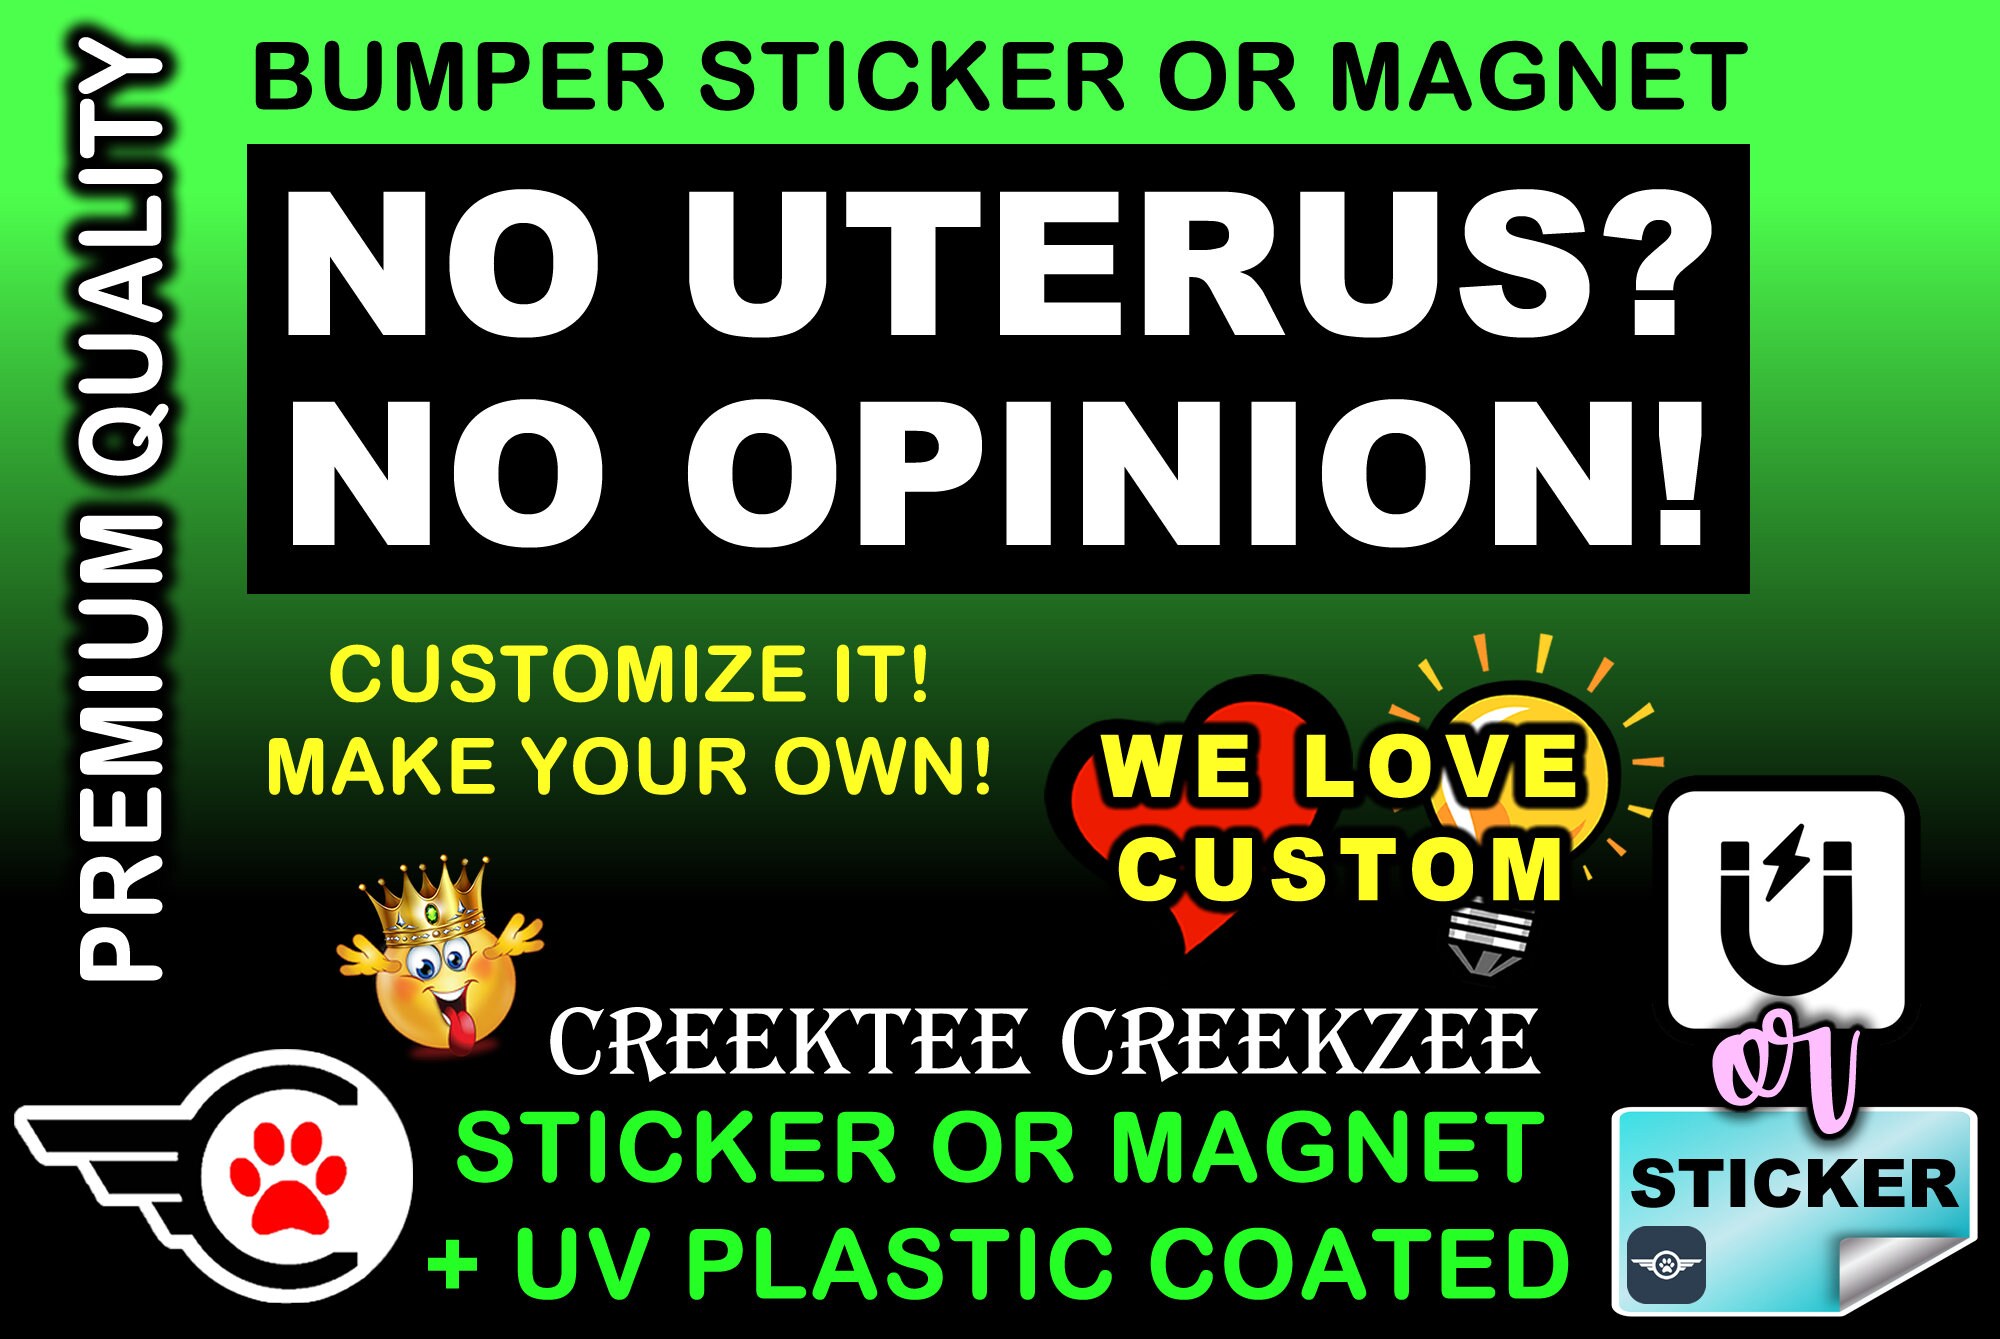 No Uterus? No Opinion! Bumper Sticker or Magnet in new sizes, 4